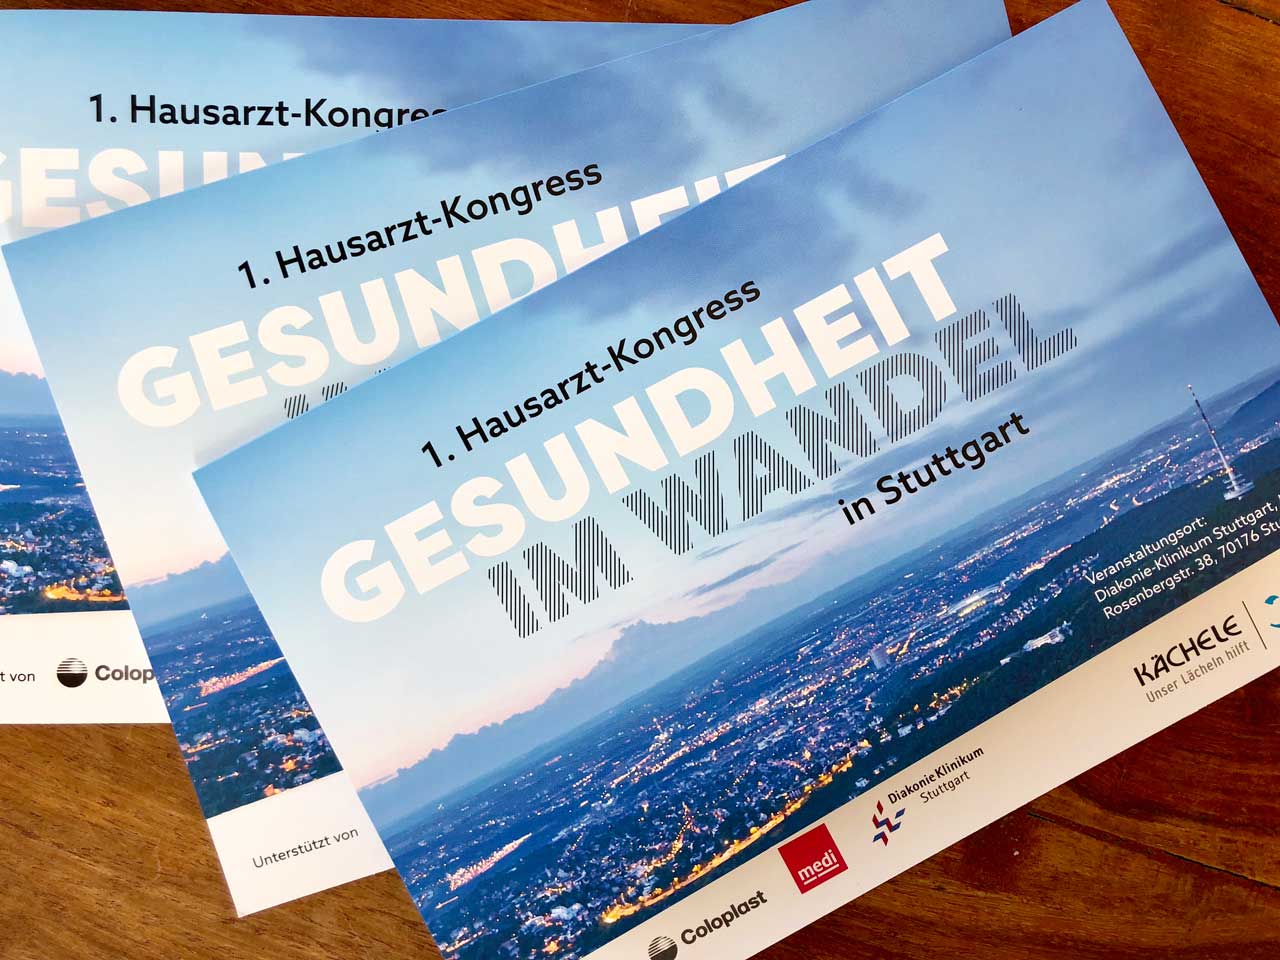 Hausarzt-Kongress in Stuttgart Invitation to the premiere